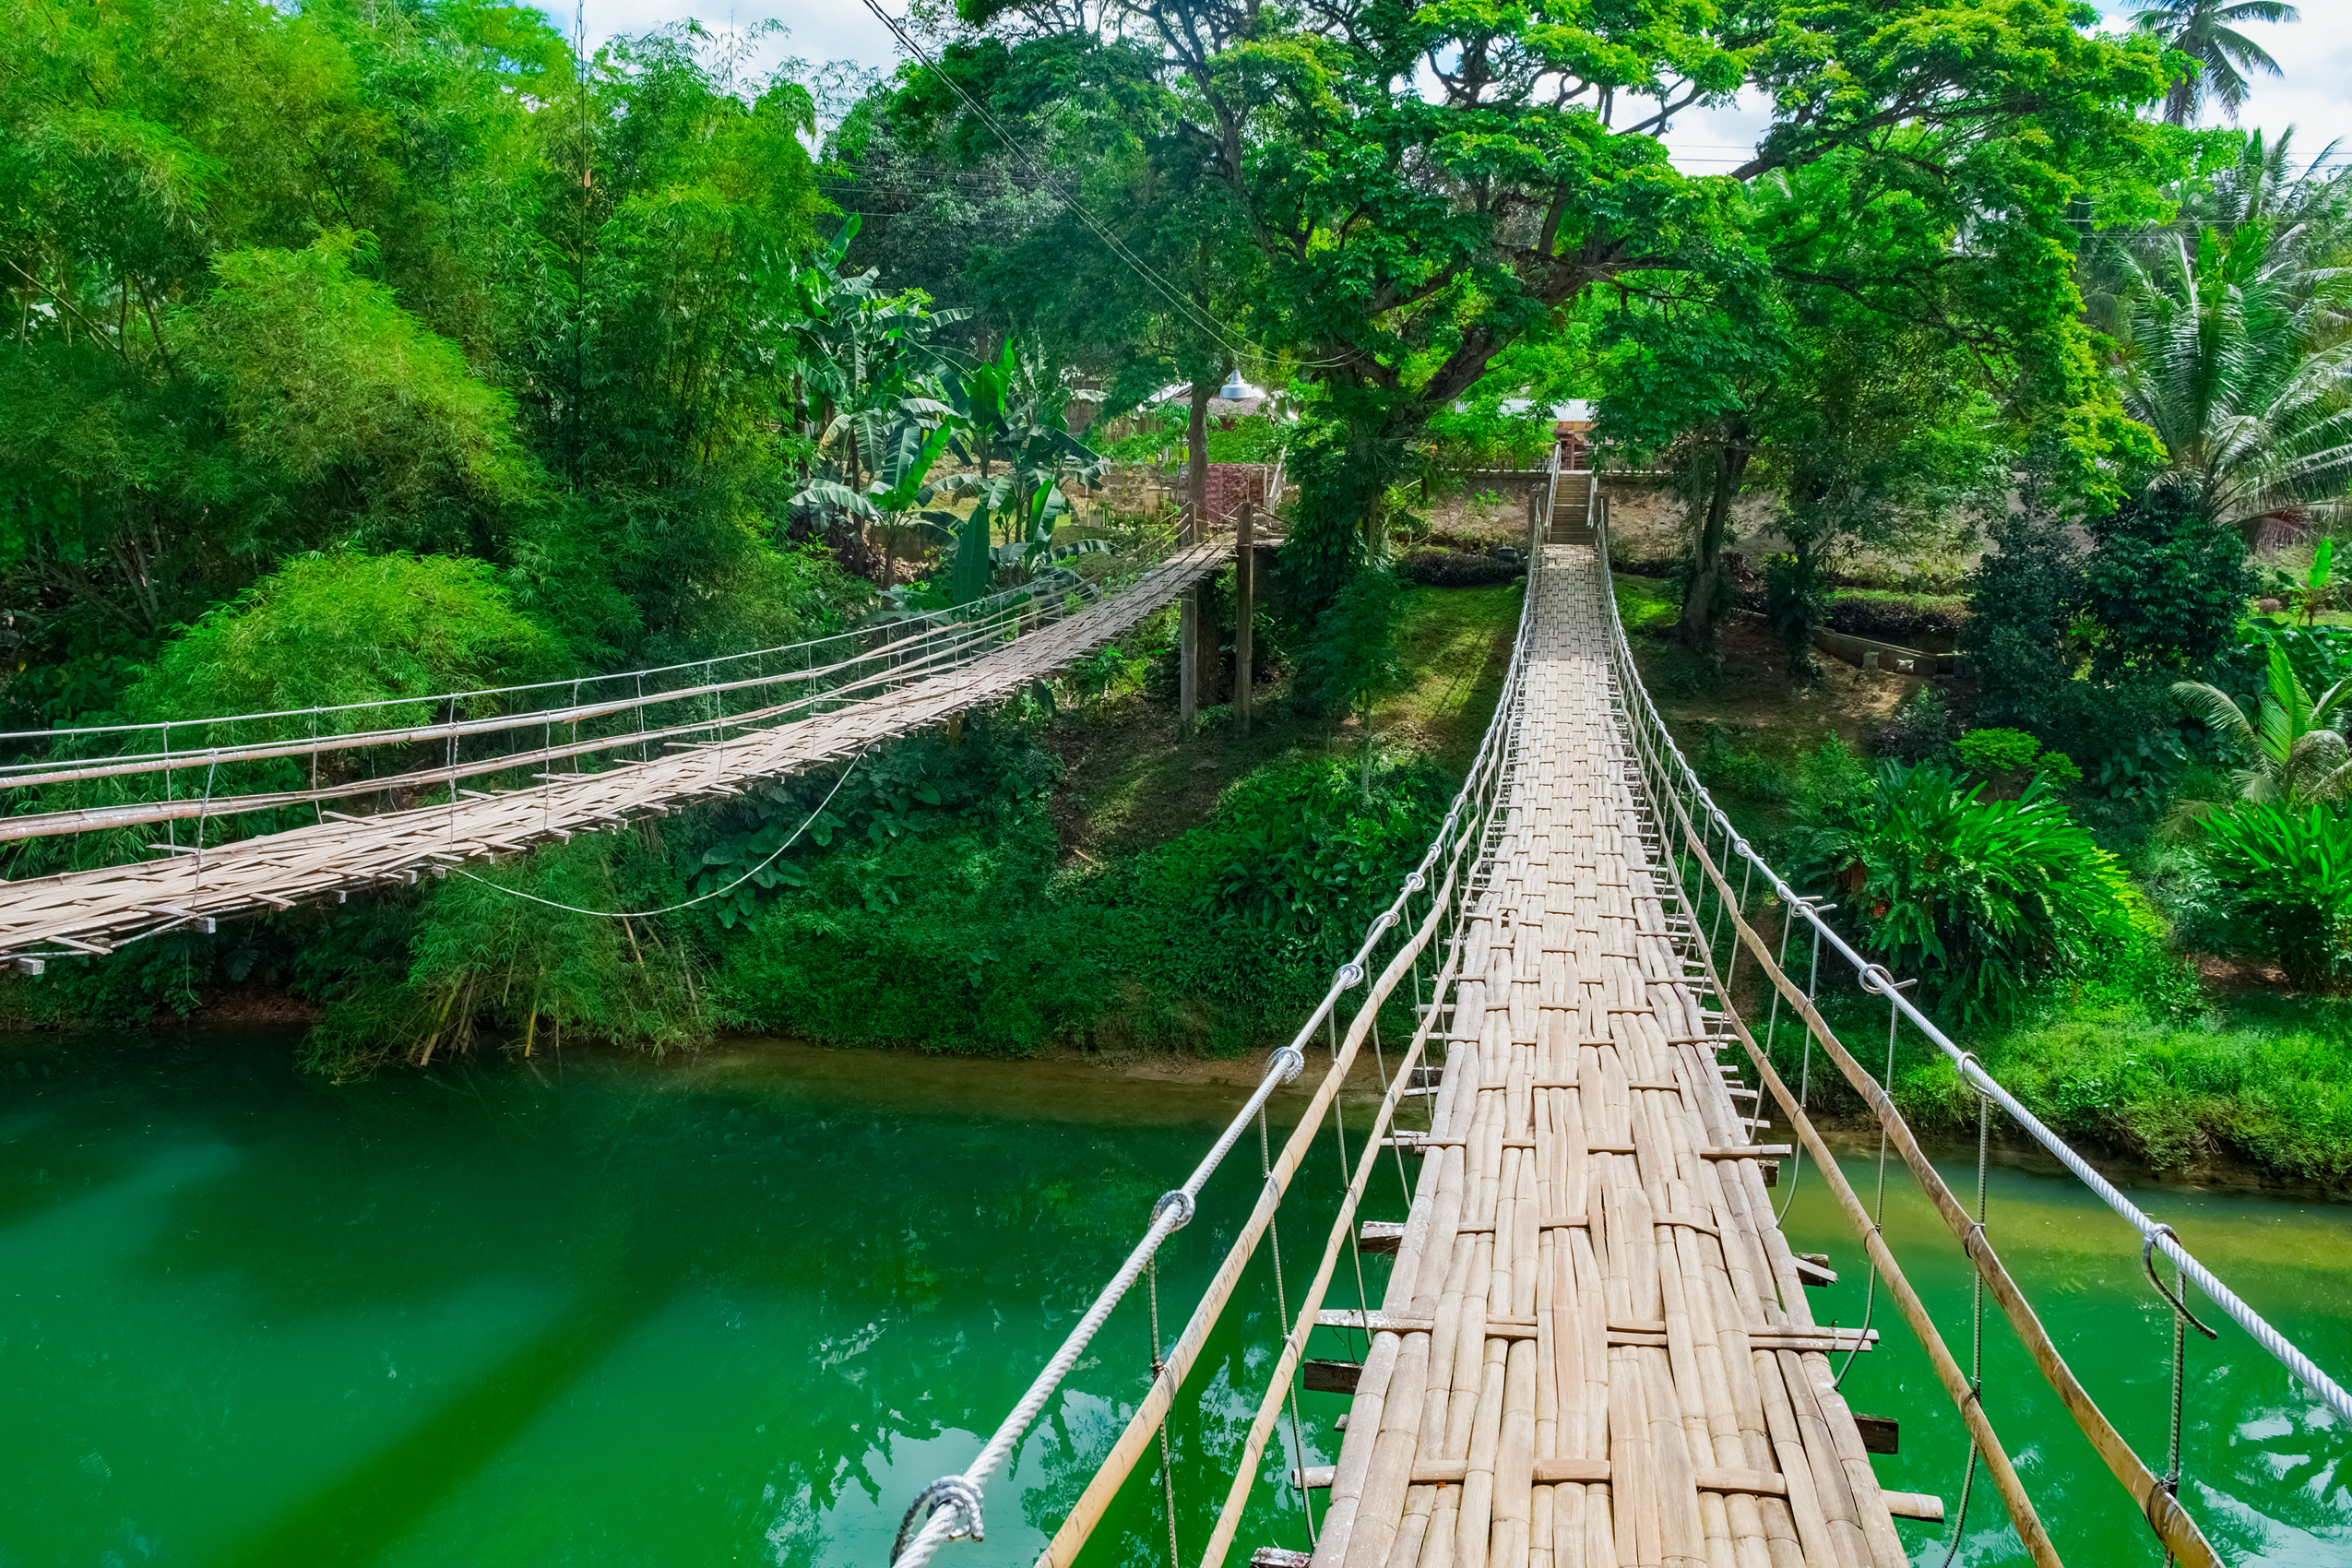 Tigbao swinging bridge in Bohol, Philippines